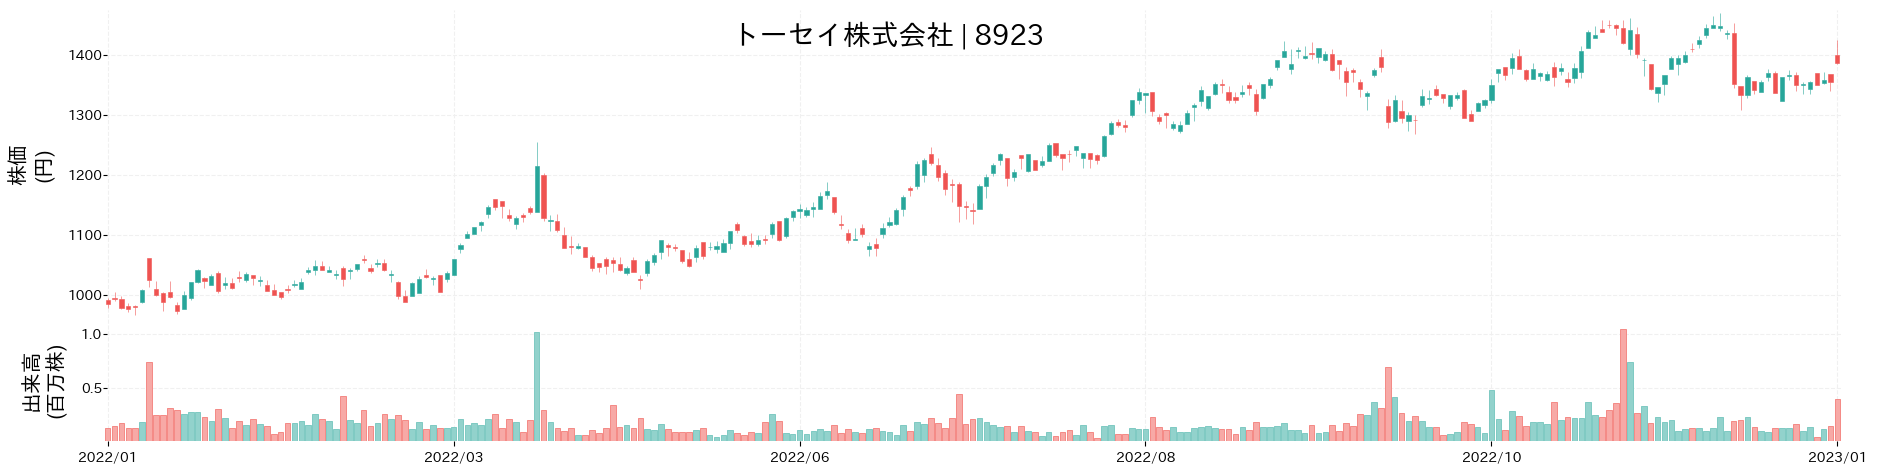 トーセイの株価推移(2022)